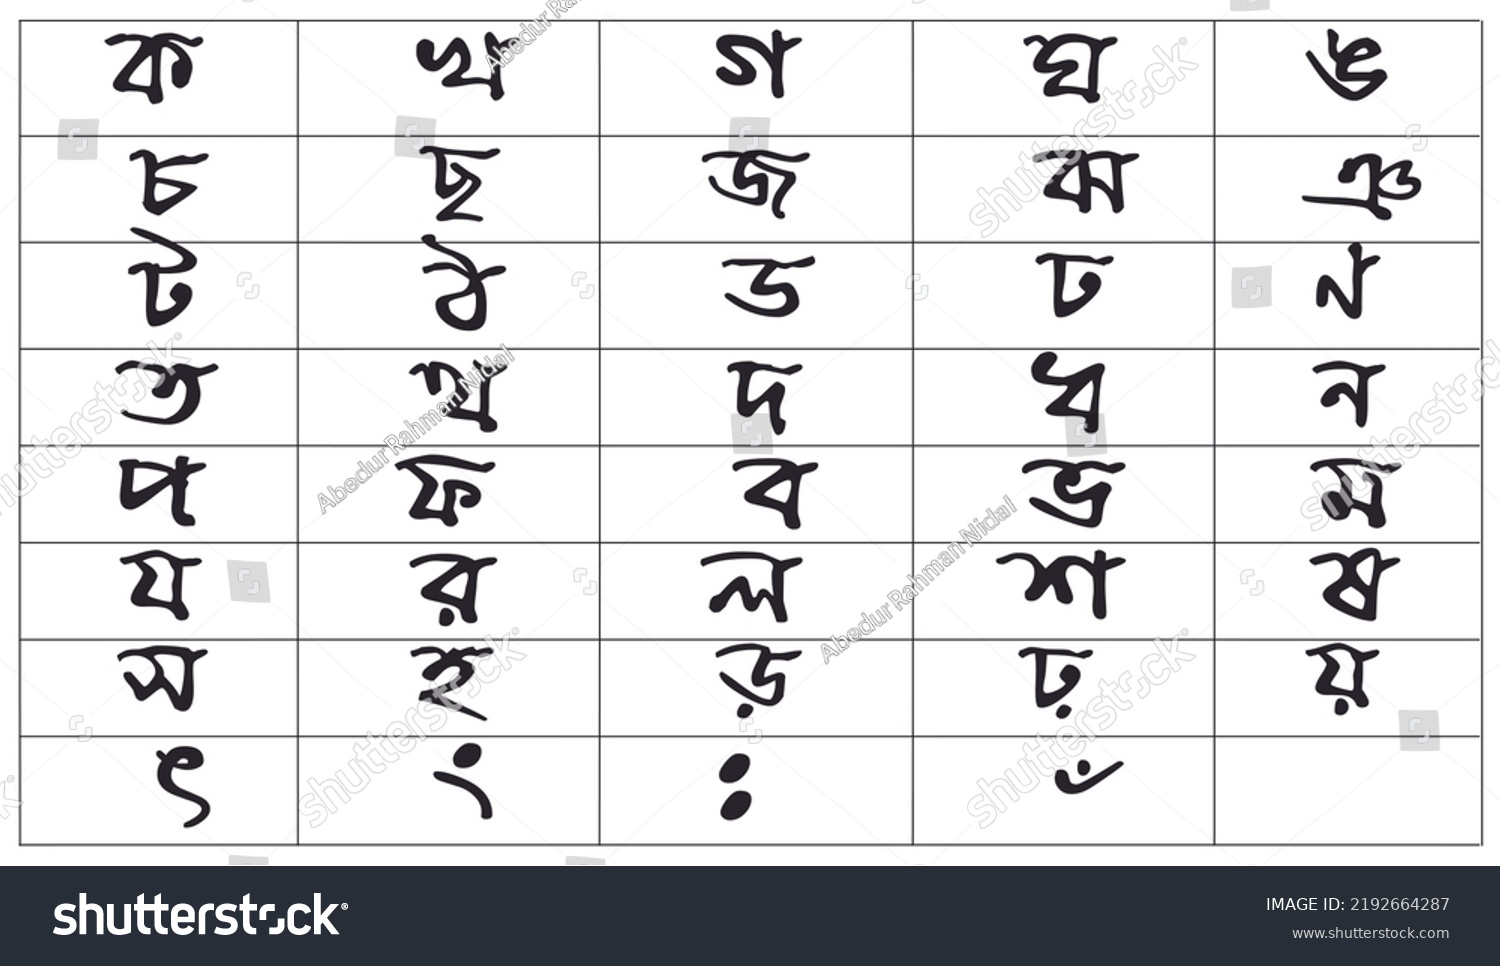 Bengali Alphabet Bangla Alphabet Alphabet Used Stock Illustration ...